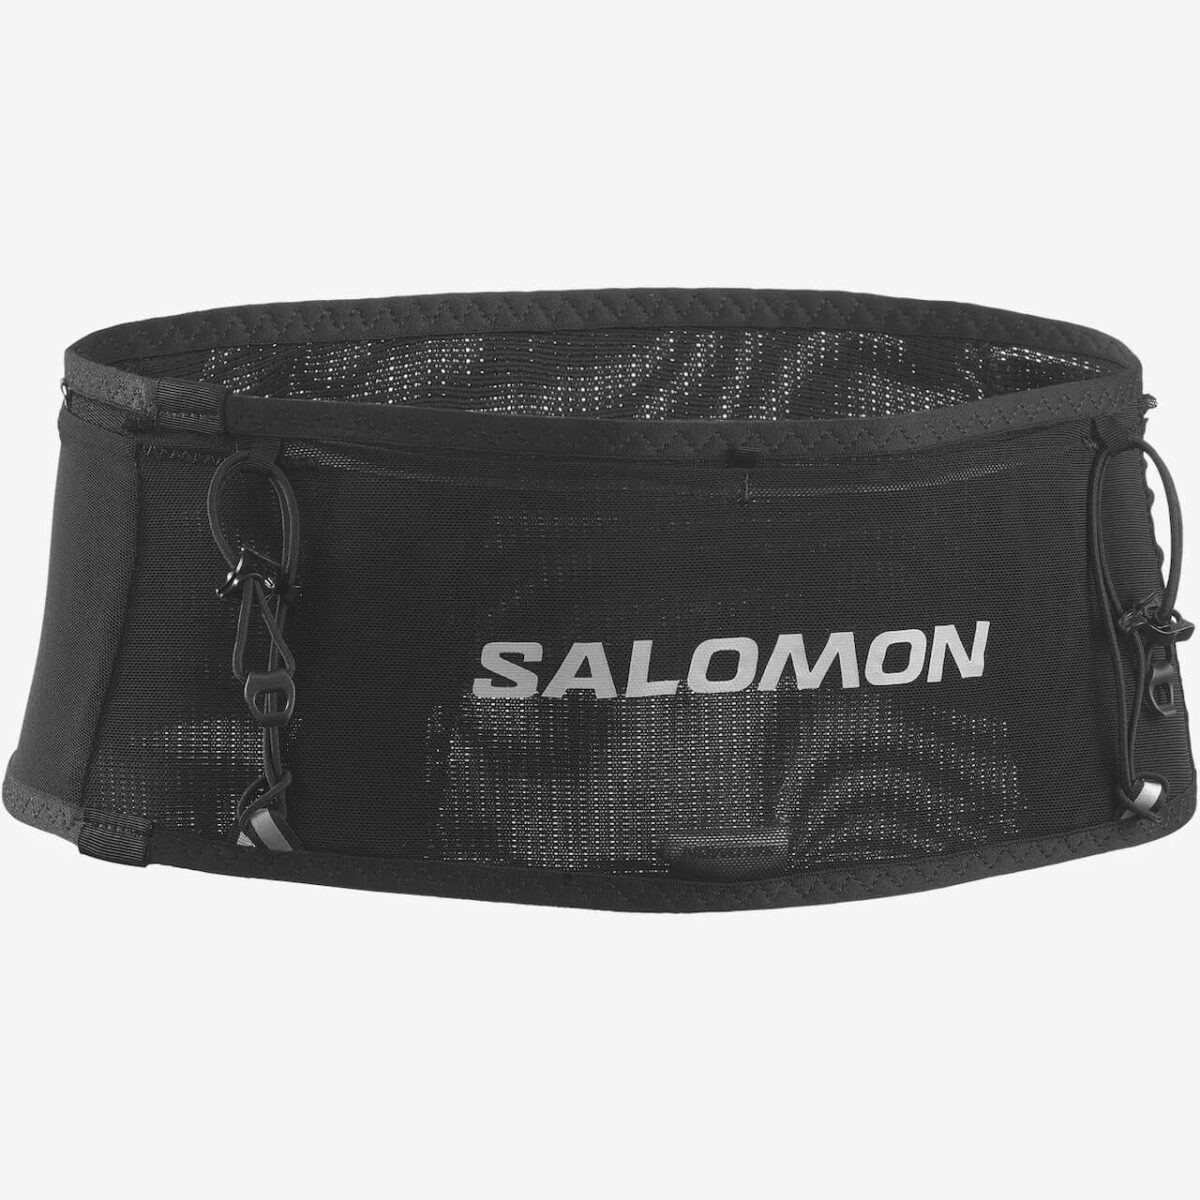 Salomon Sense Pro